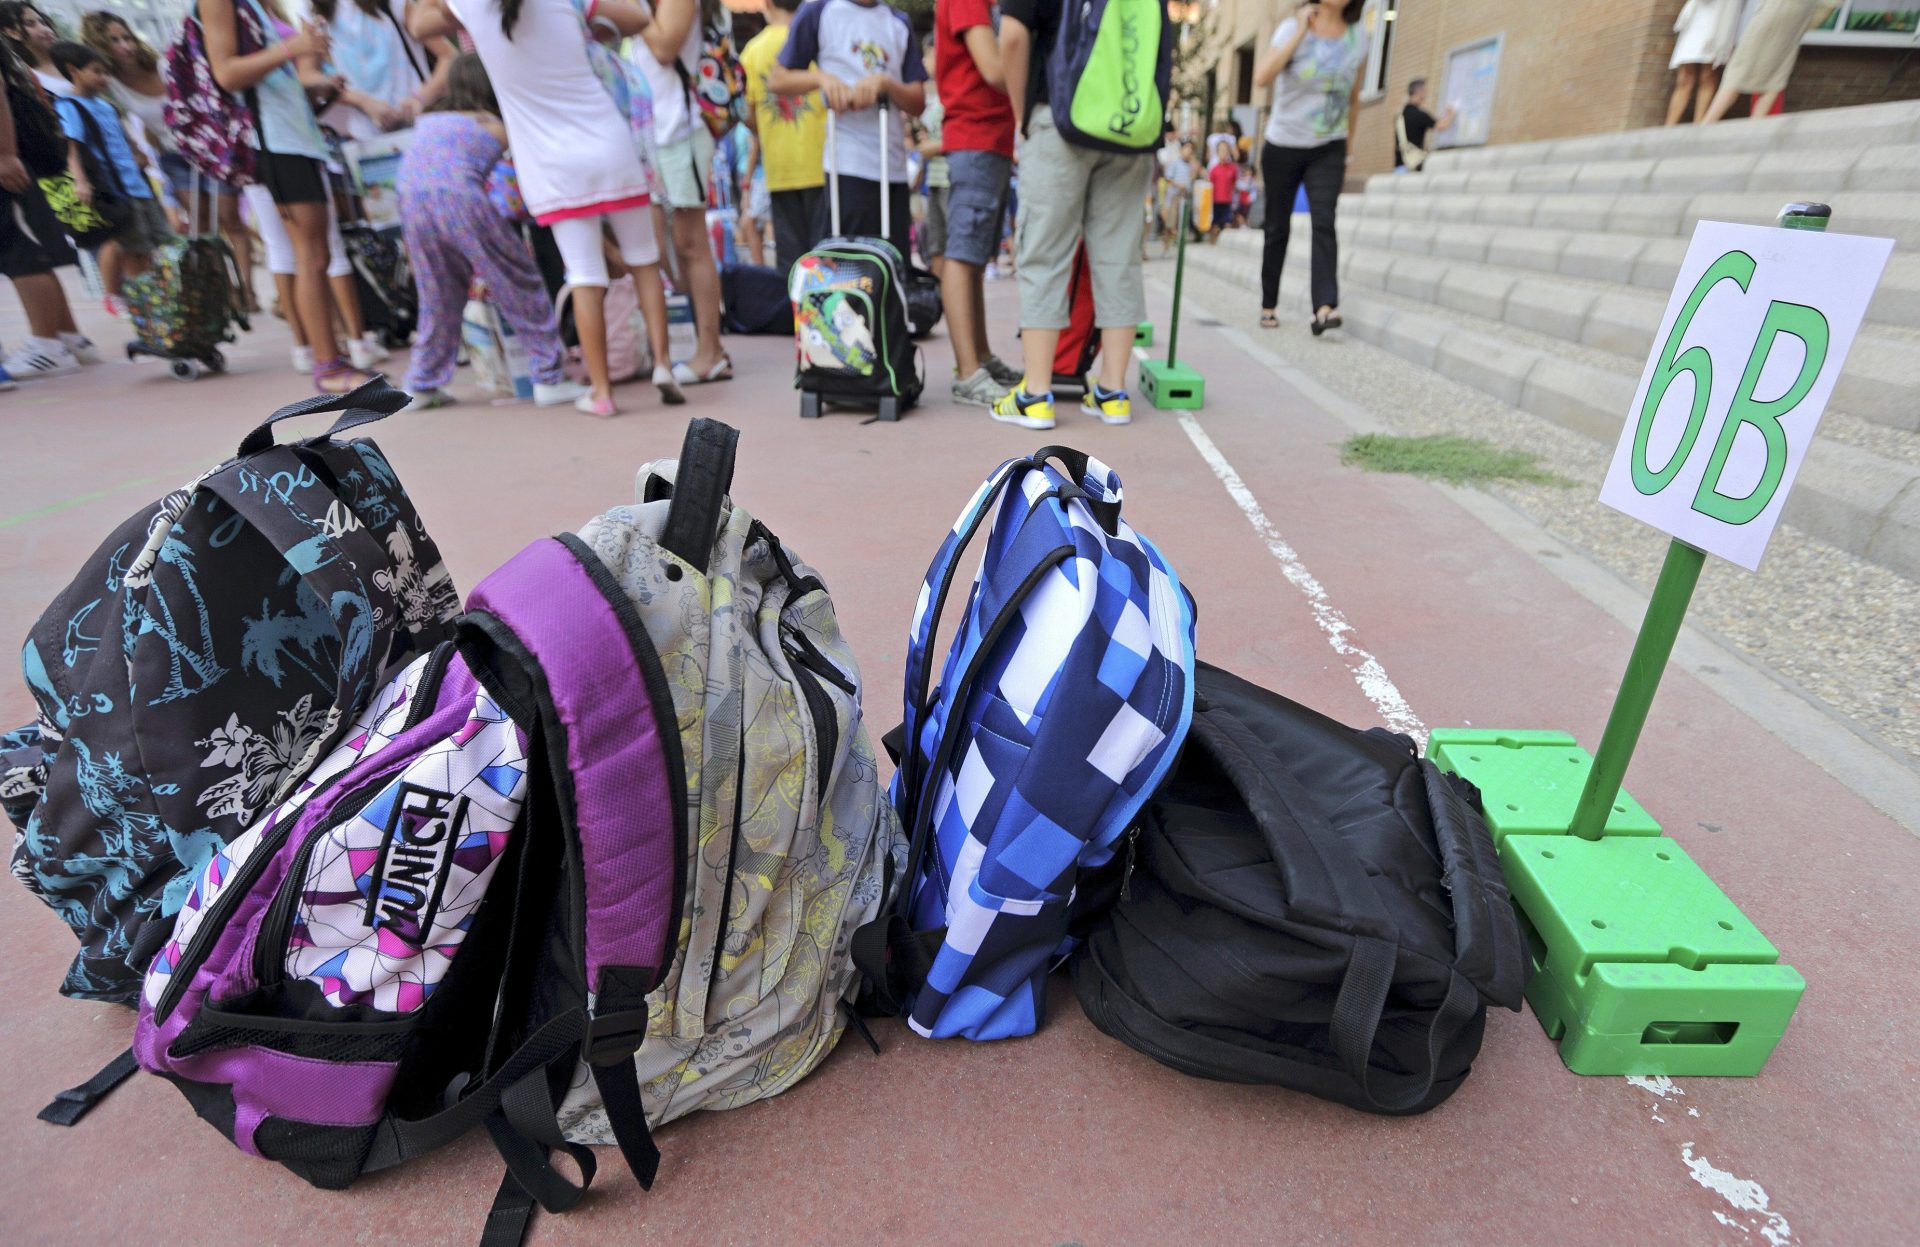 Varias mochilas del alumnado en el recreo de una escuela. El Tribunal Superior de Justicia de Cataluña (TSJC) impone más castellano sin porcentajes por primera vez en una escuela.